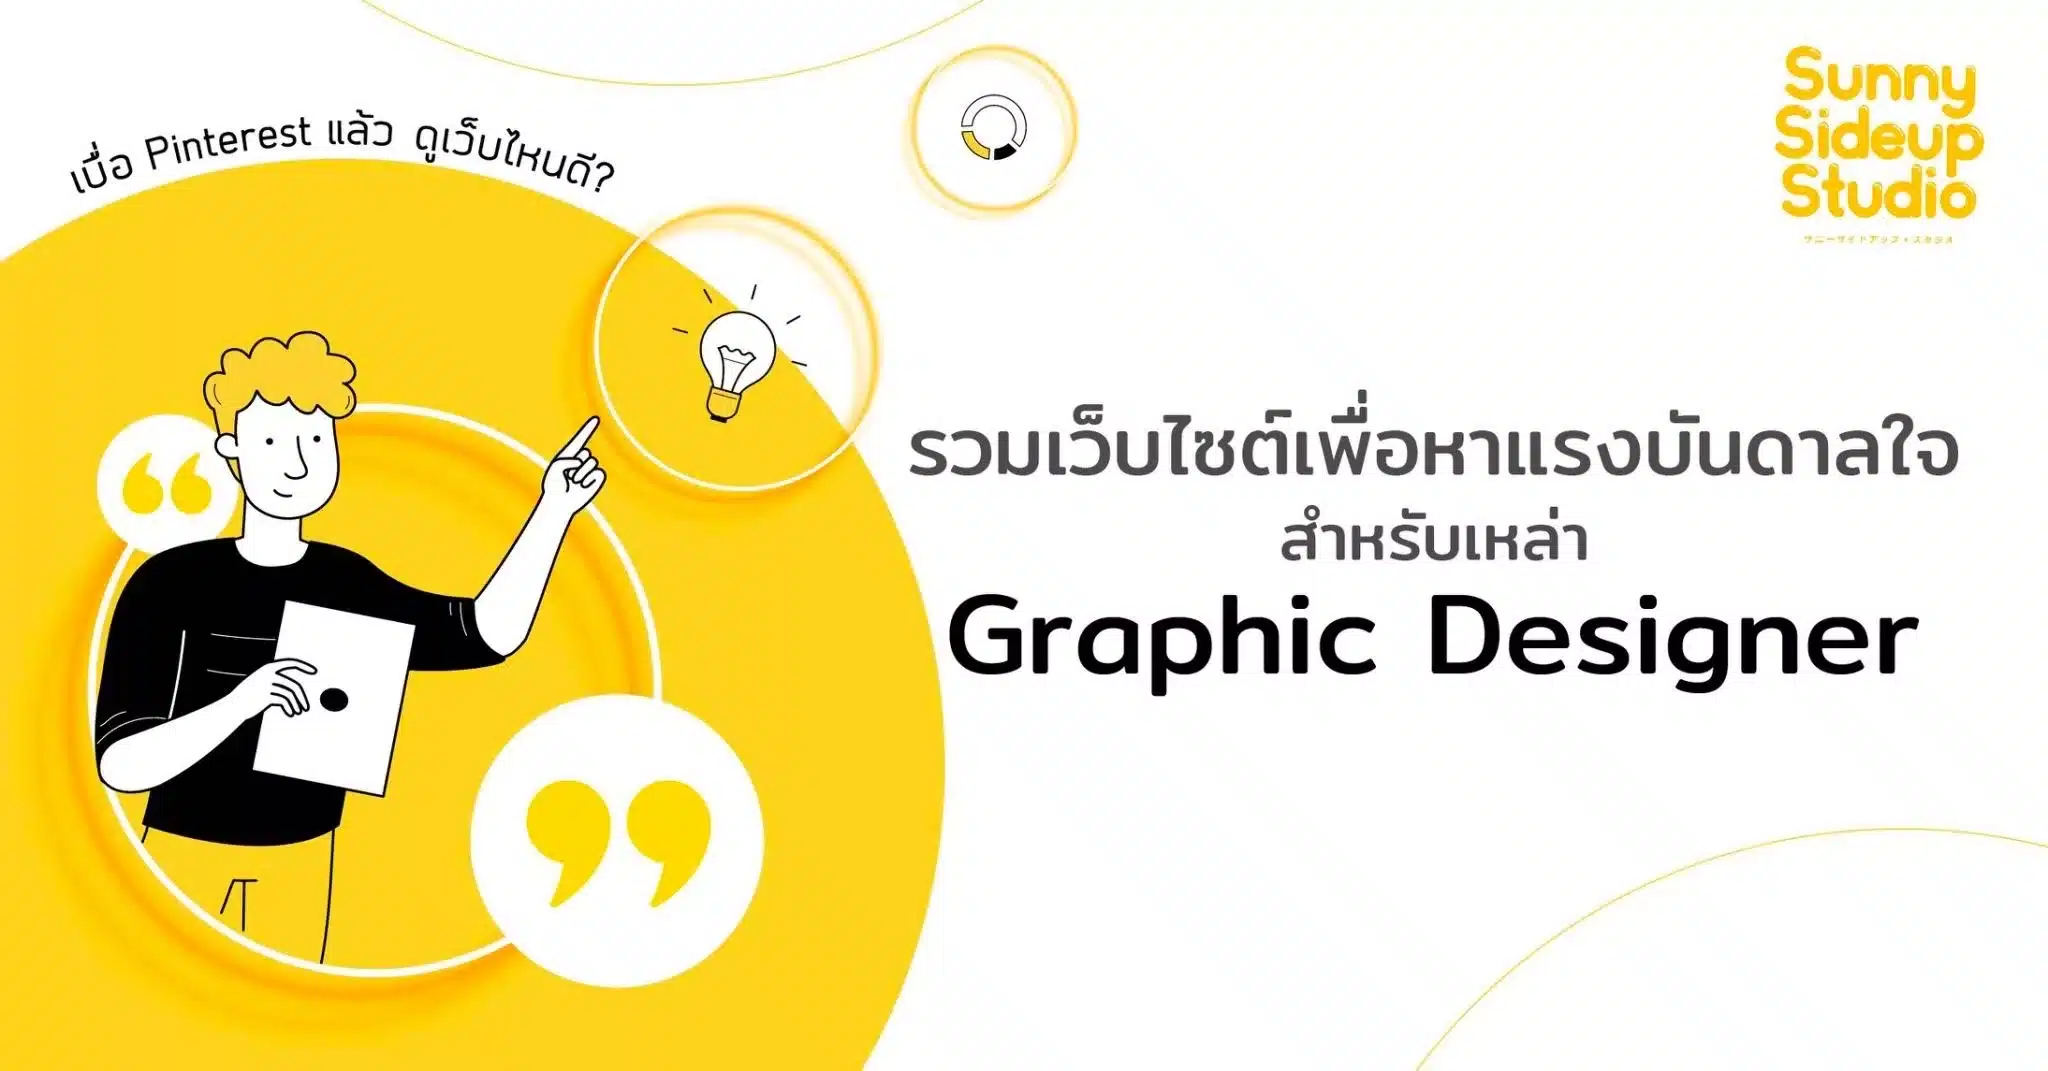 รวมเว็บ หาแรงบันดาลใจ สำหรับ Graphic Designer